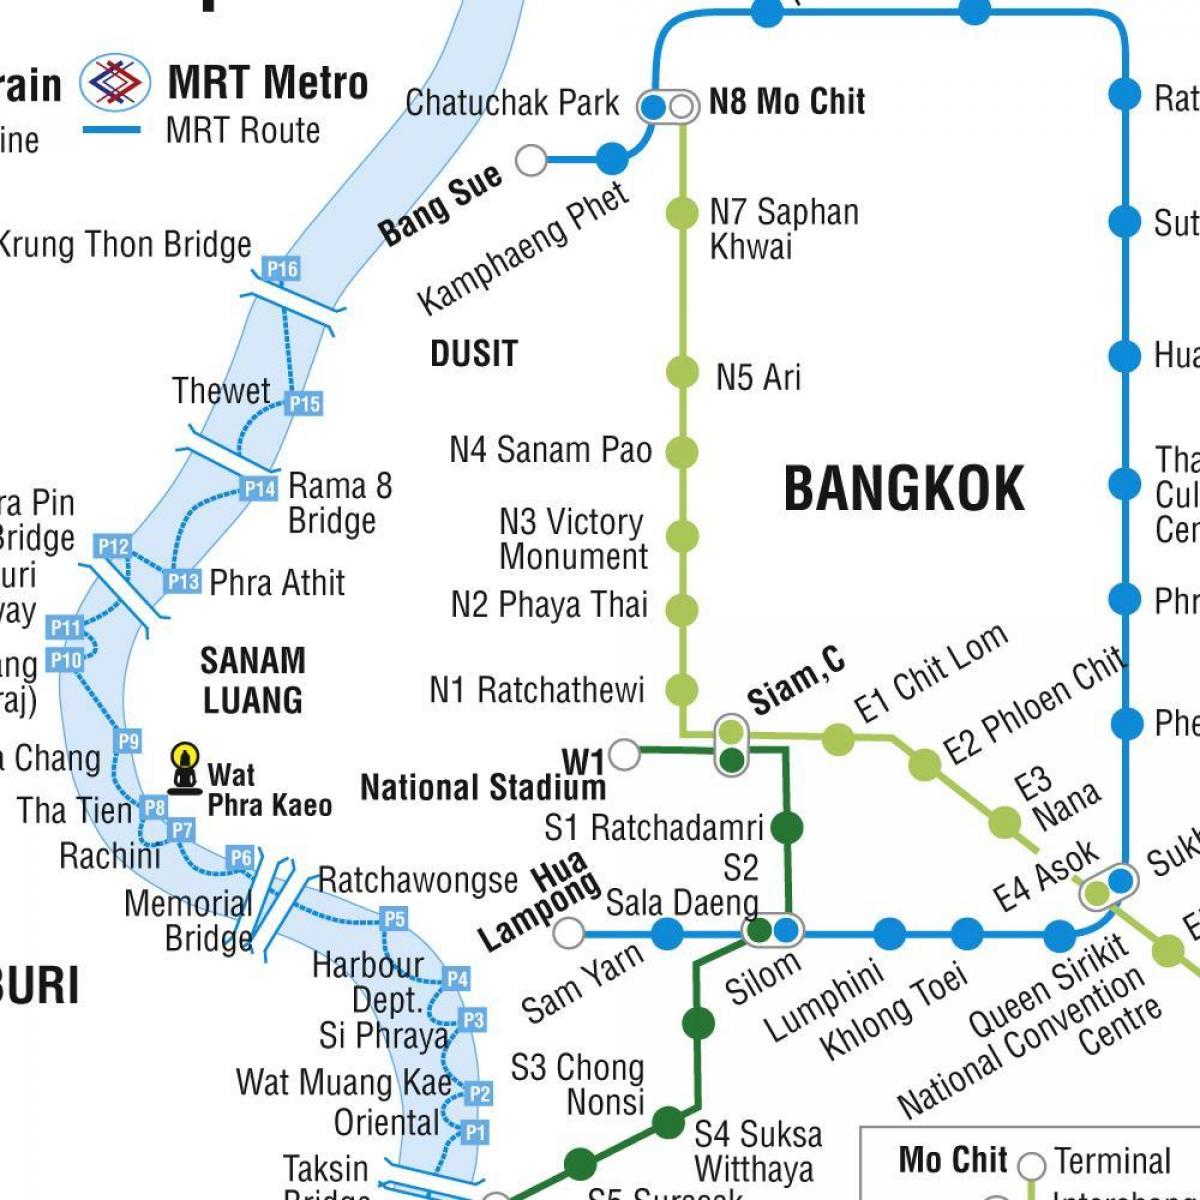 χάρτης της μπανγκόκ, το μετρό και το skytrain